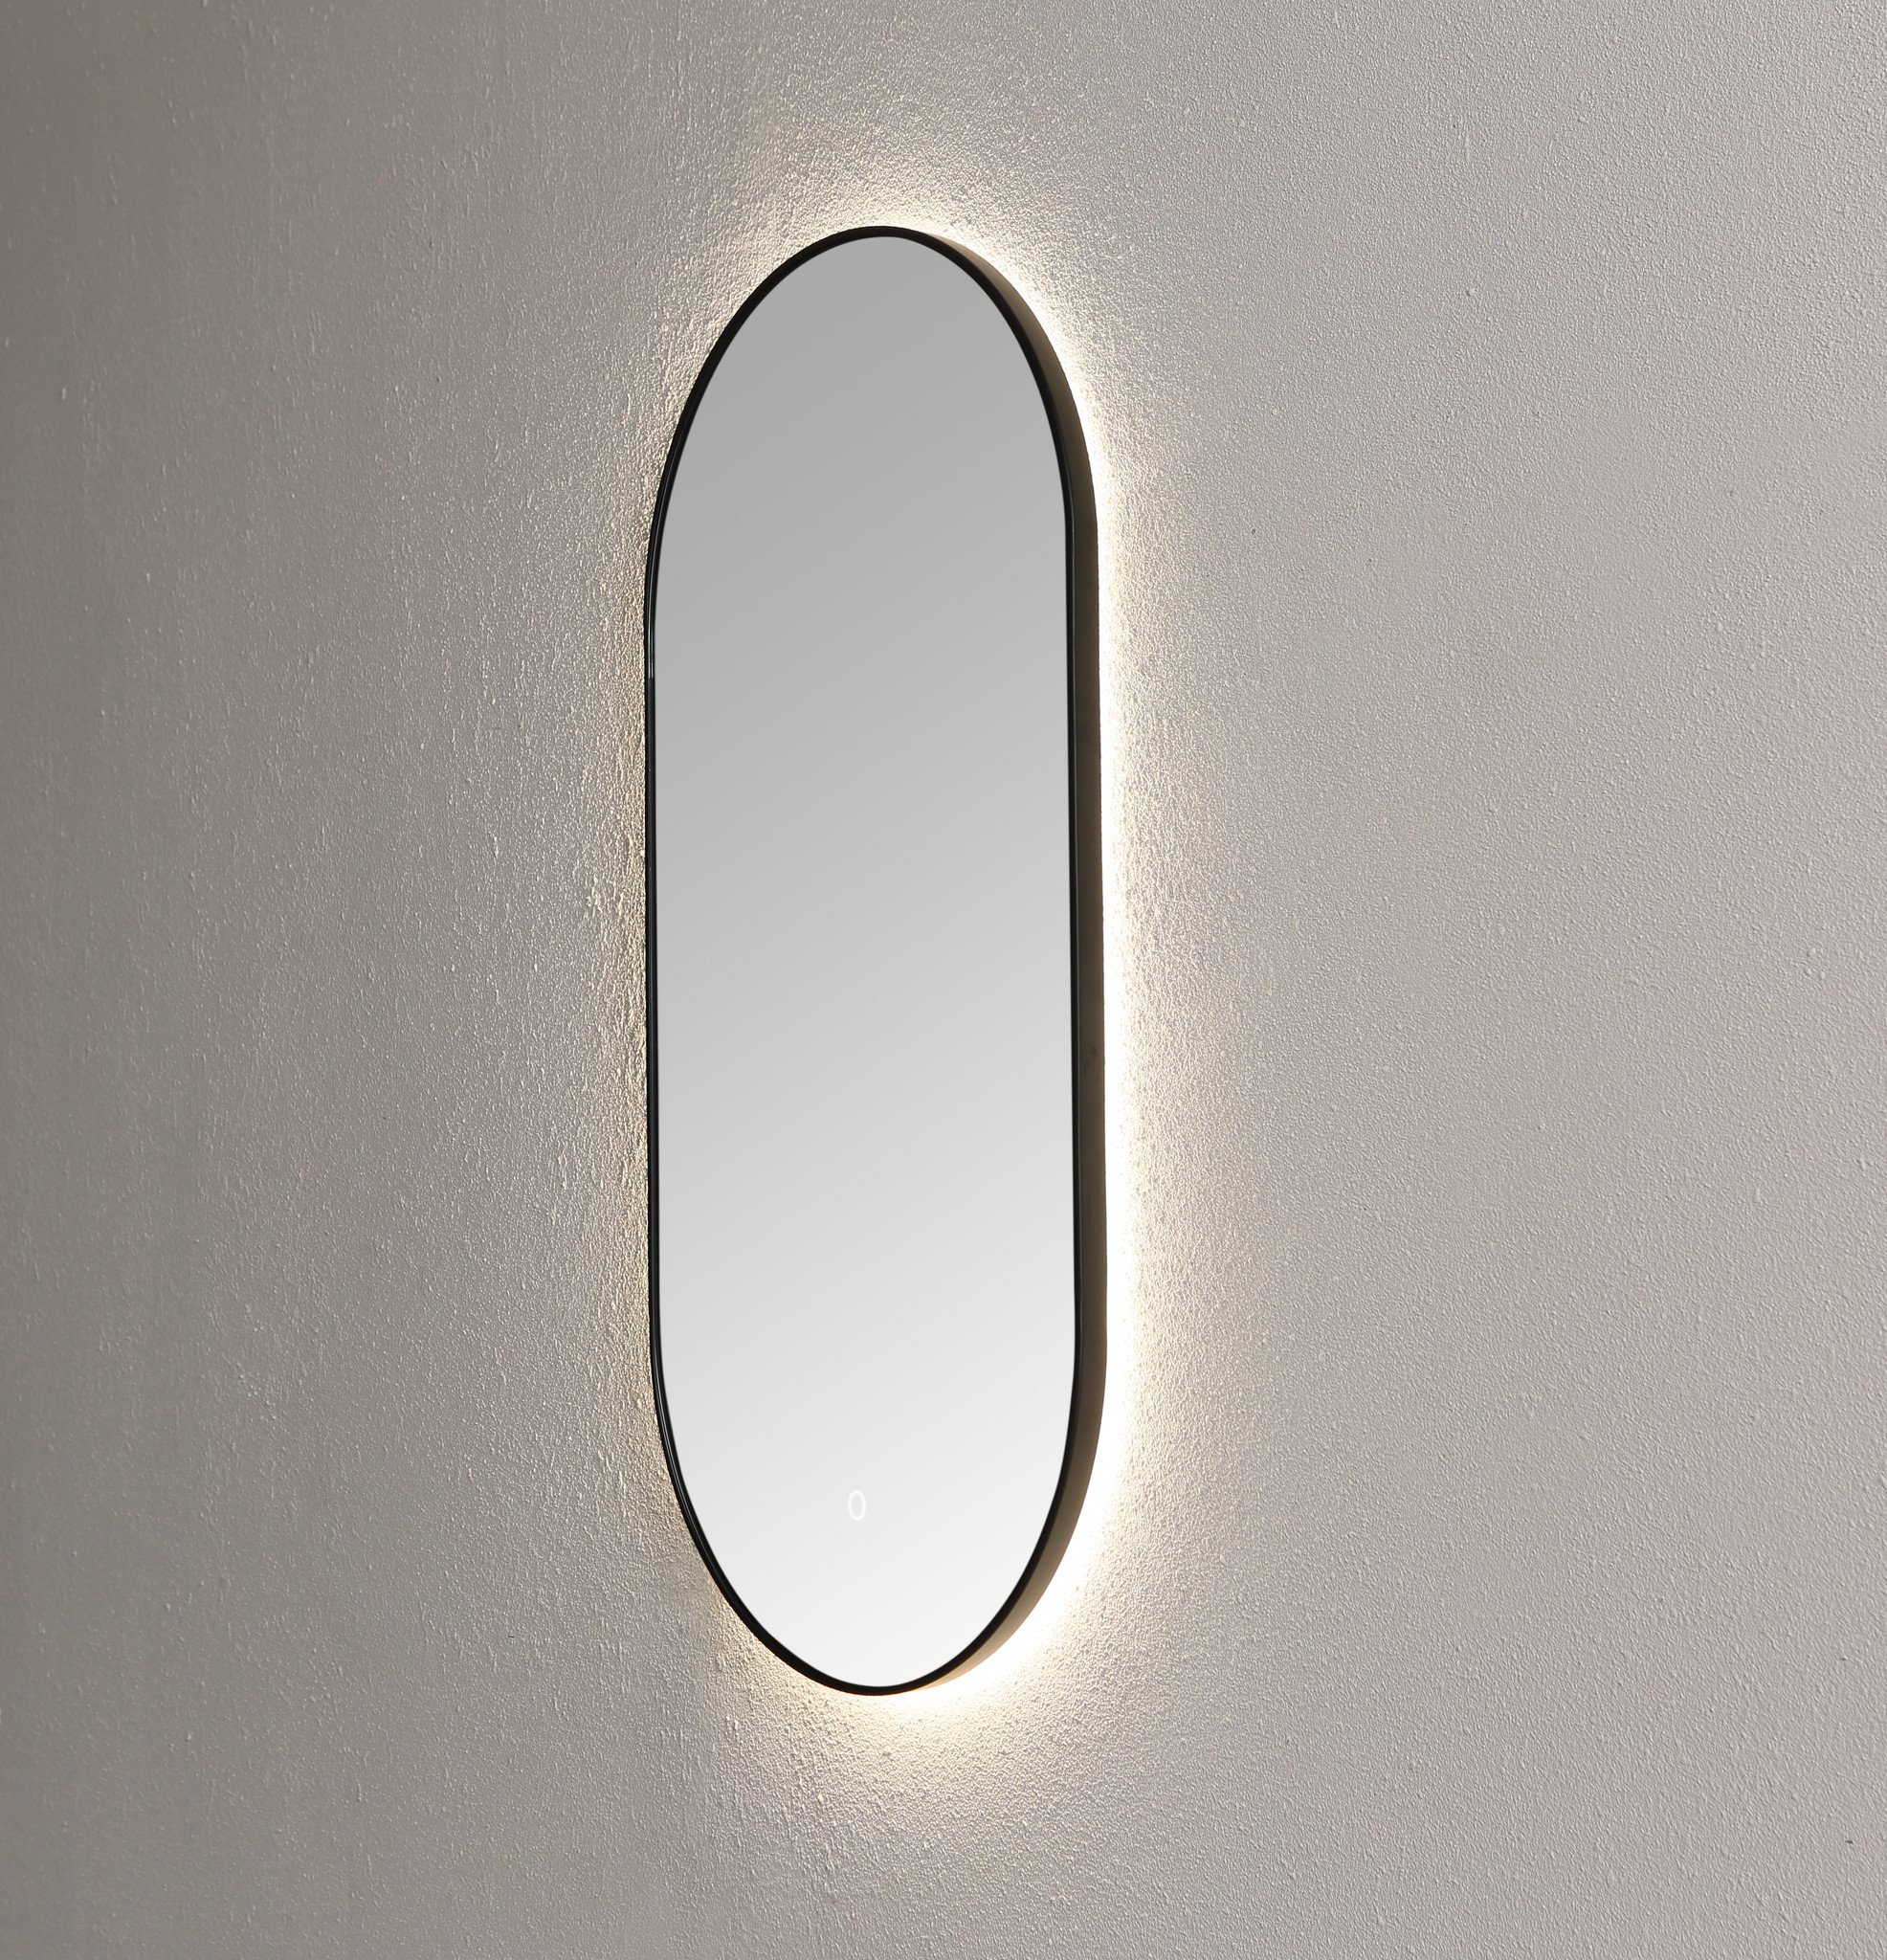 Spiegel ambiance ovaal Mat Zwart met indirecte LED verlichting, 3 kleur instelbaar & dimbaar